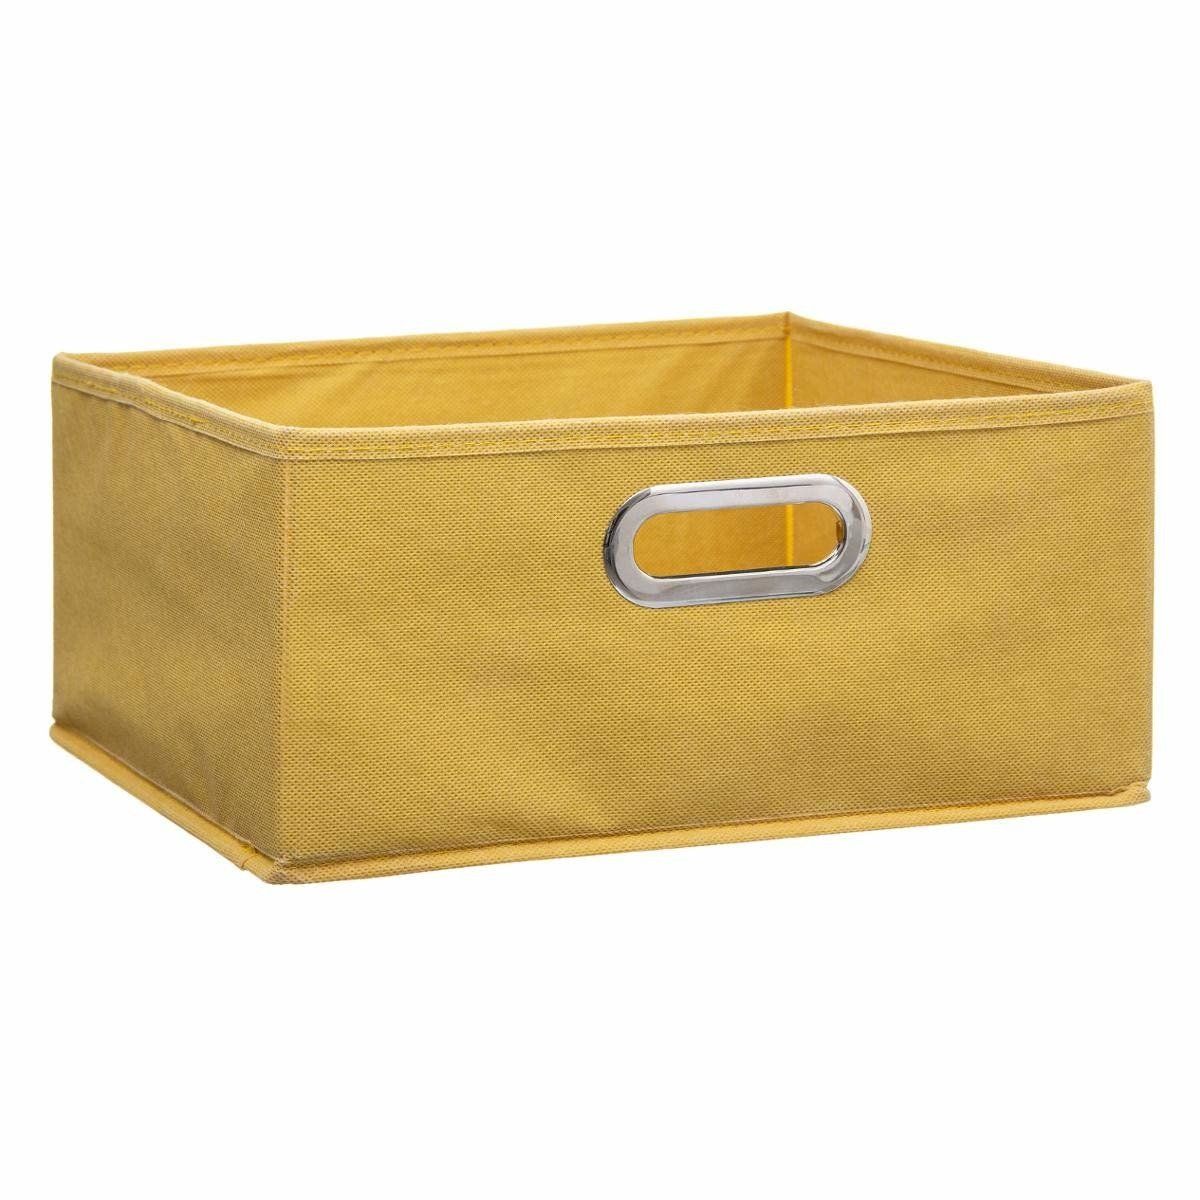 5five Simply Smart Krabice na textil ve žluté barvě z lepenky a textilu, 31x15 cm - EMAKO.CZ s.r.o.